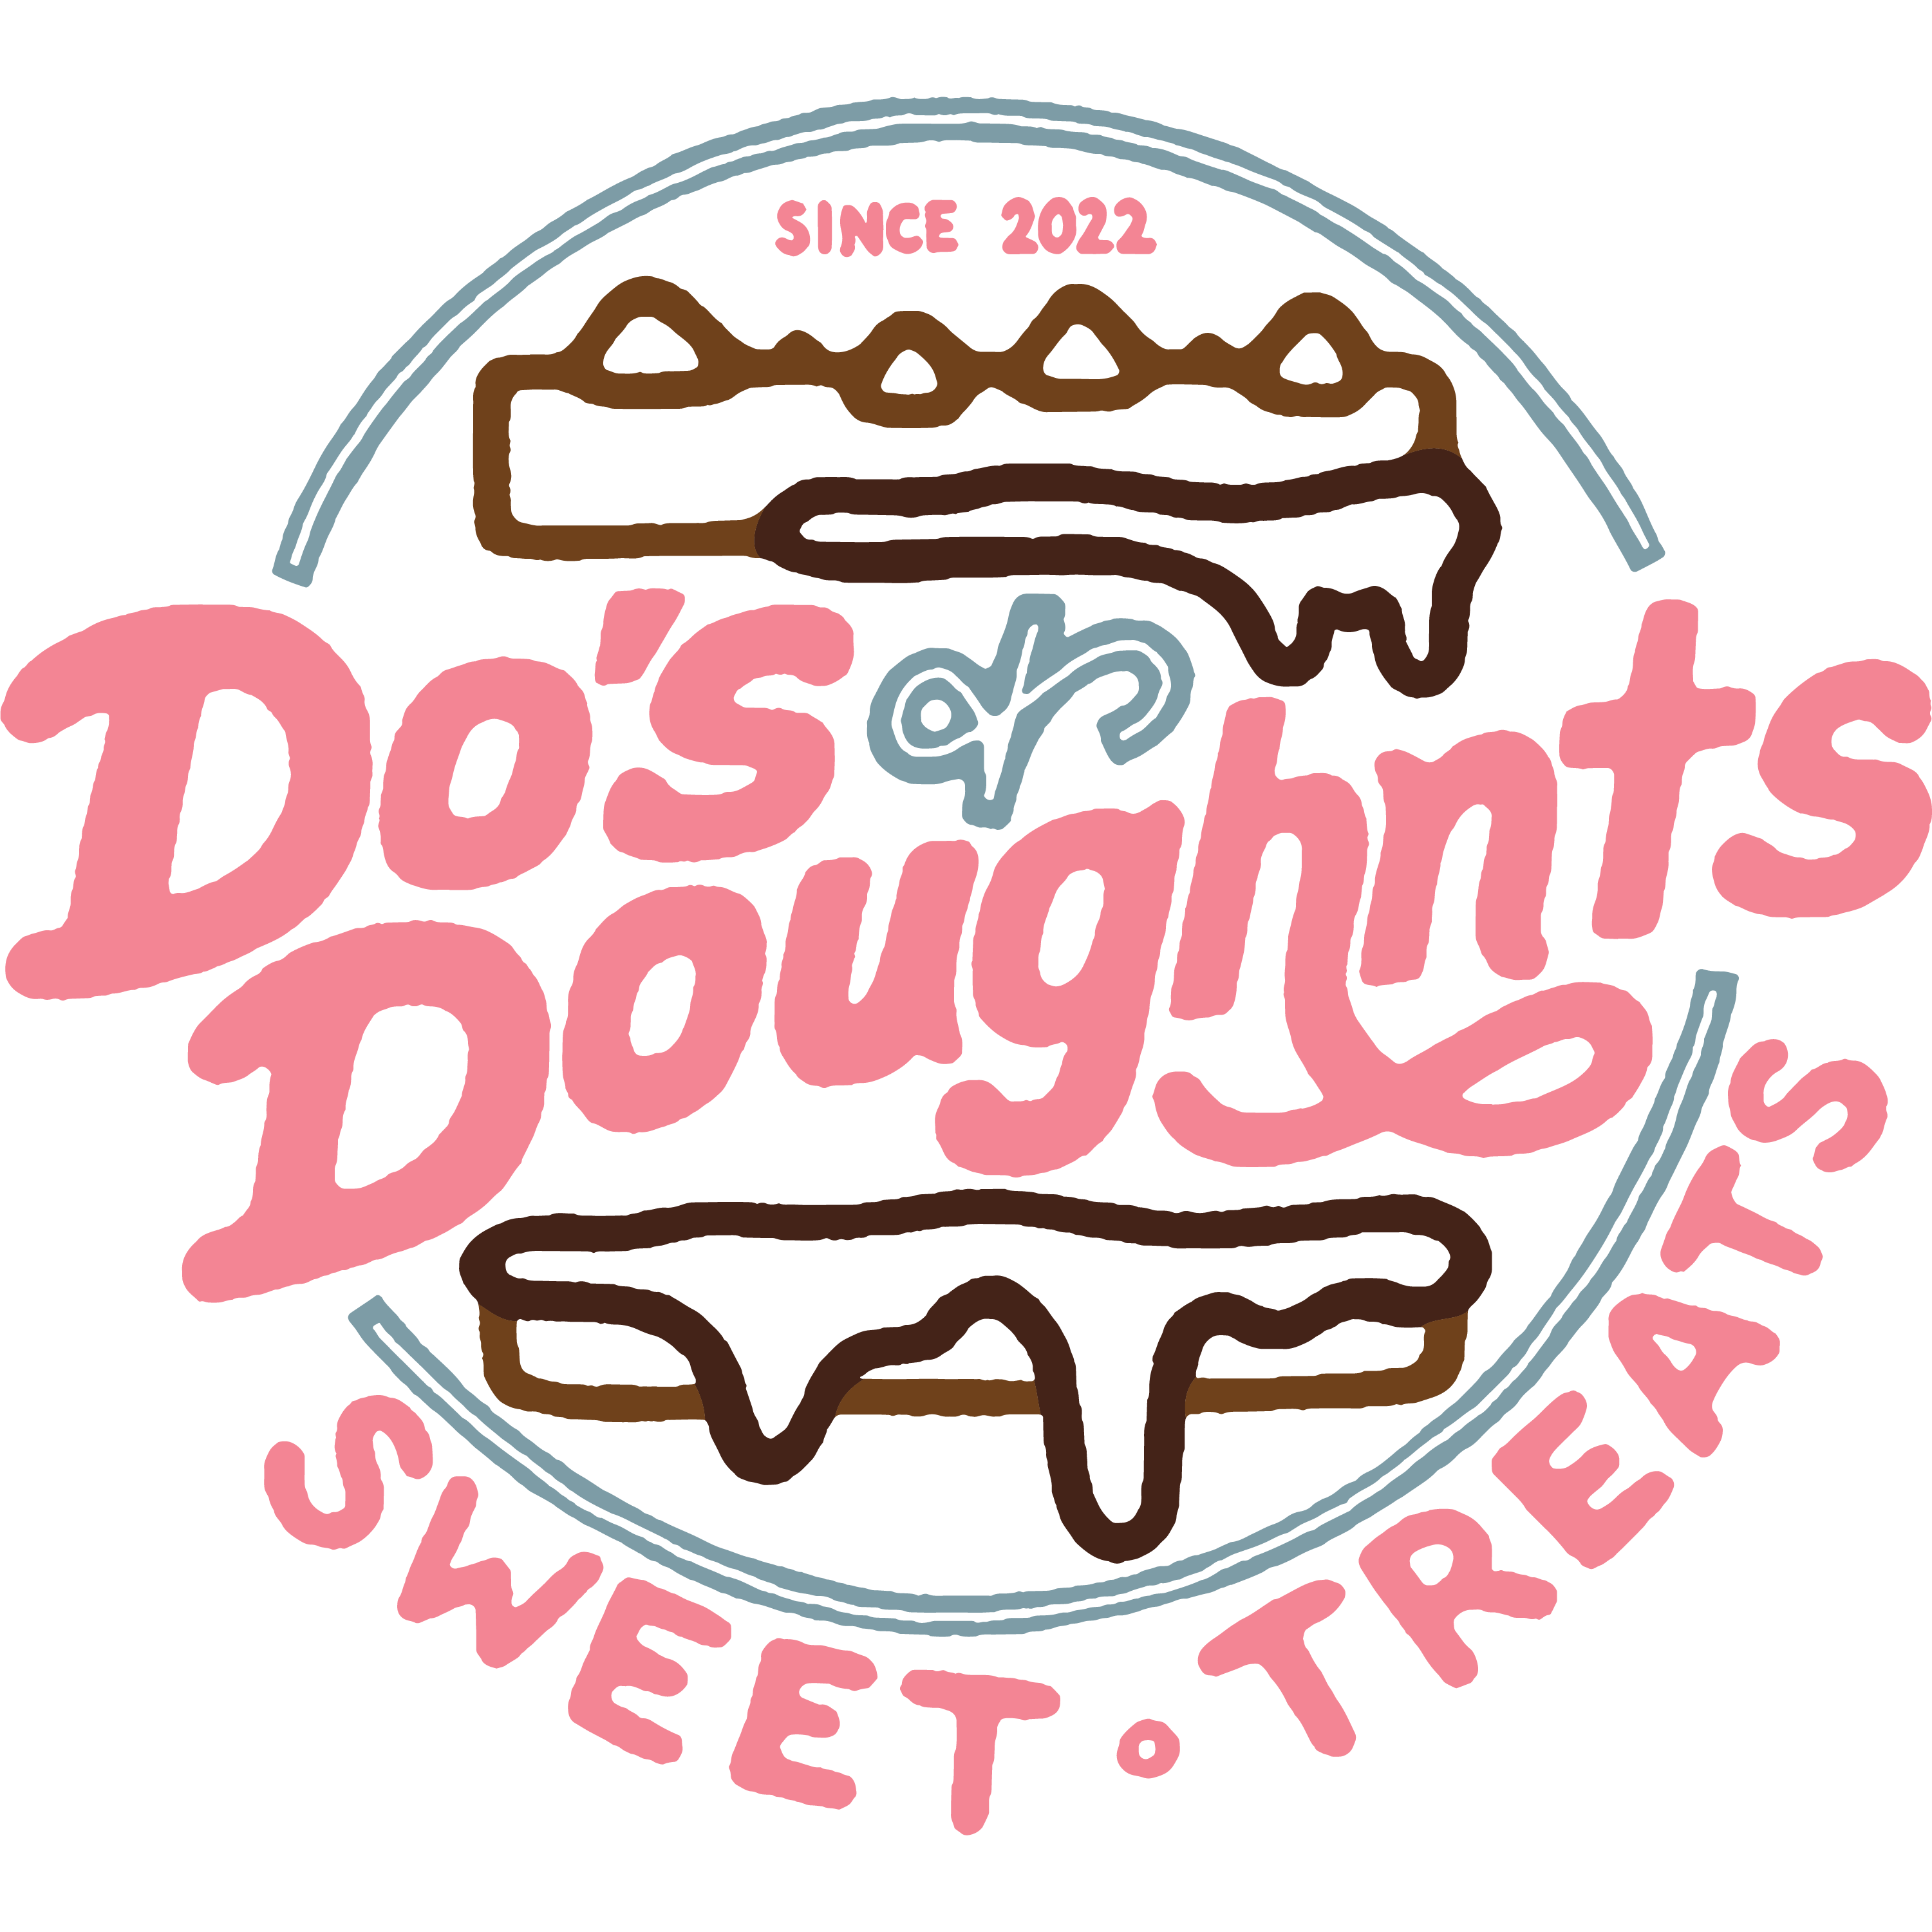 Do's & Doughnts Sweet Treats